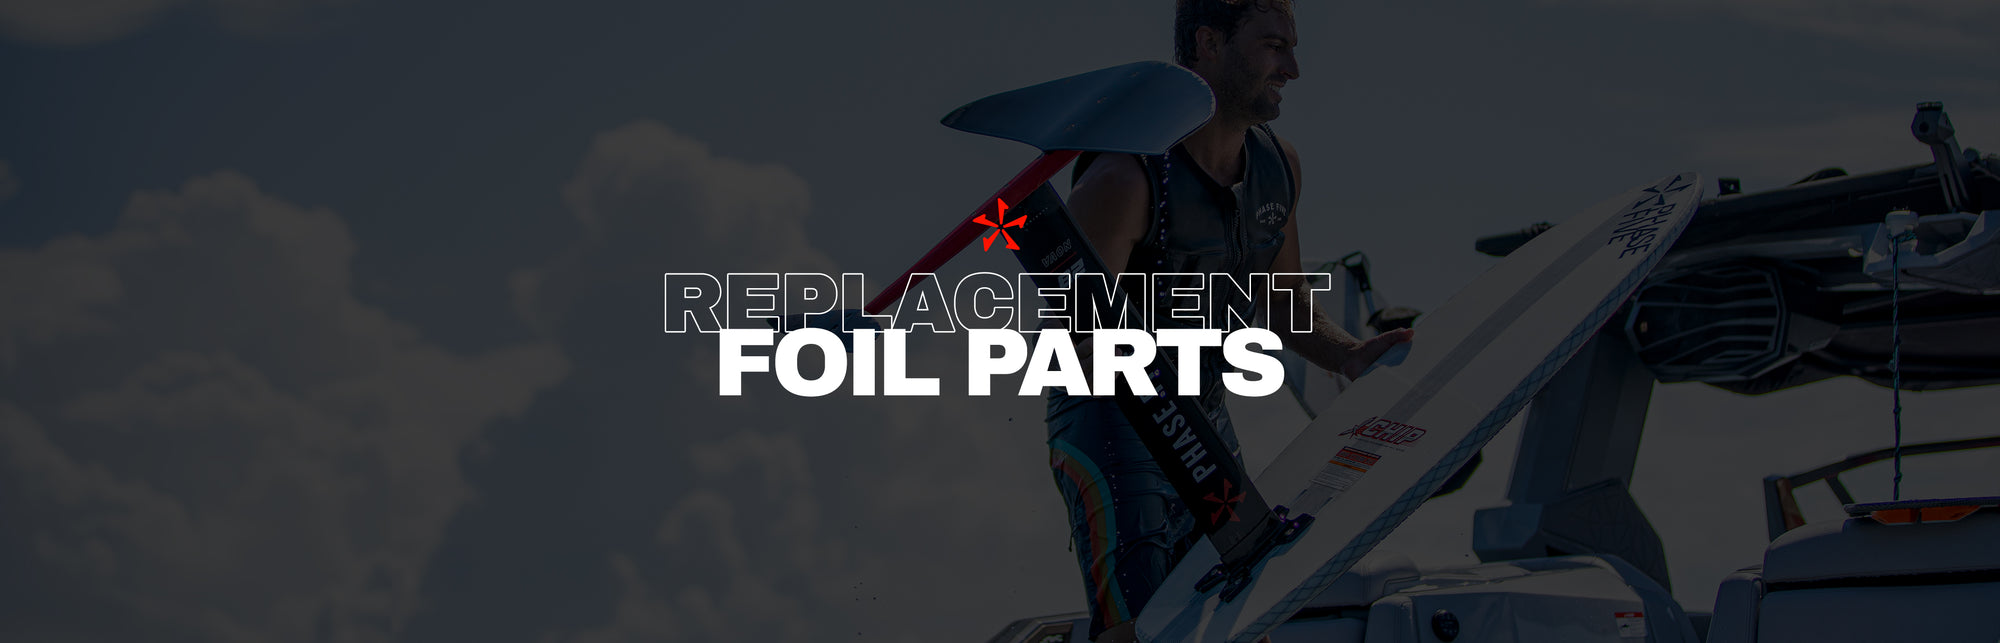 Replacement Foil Parts